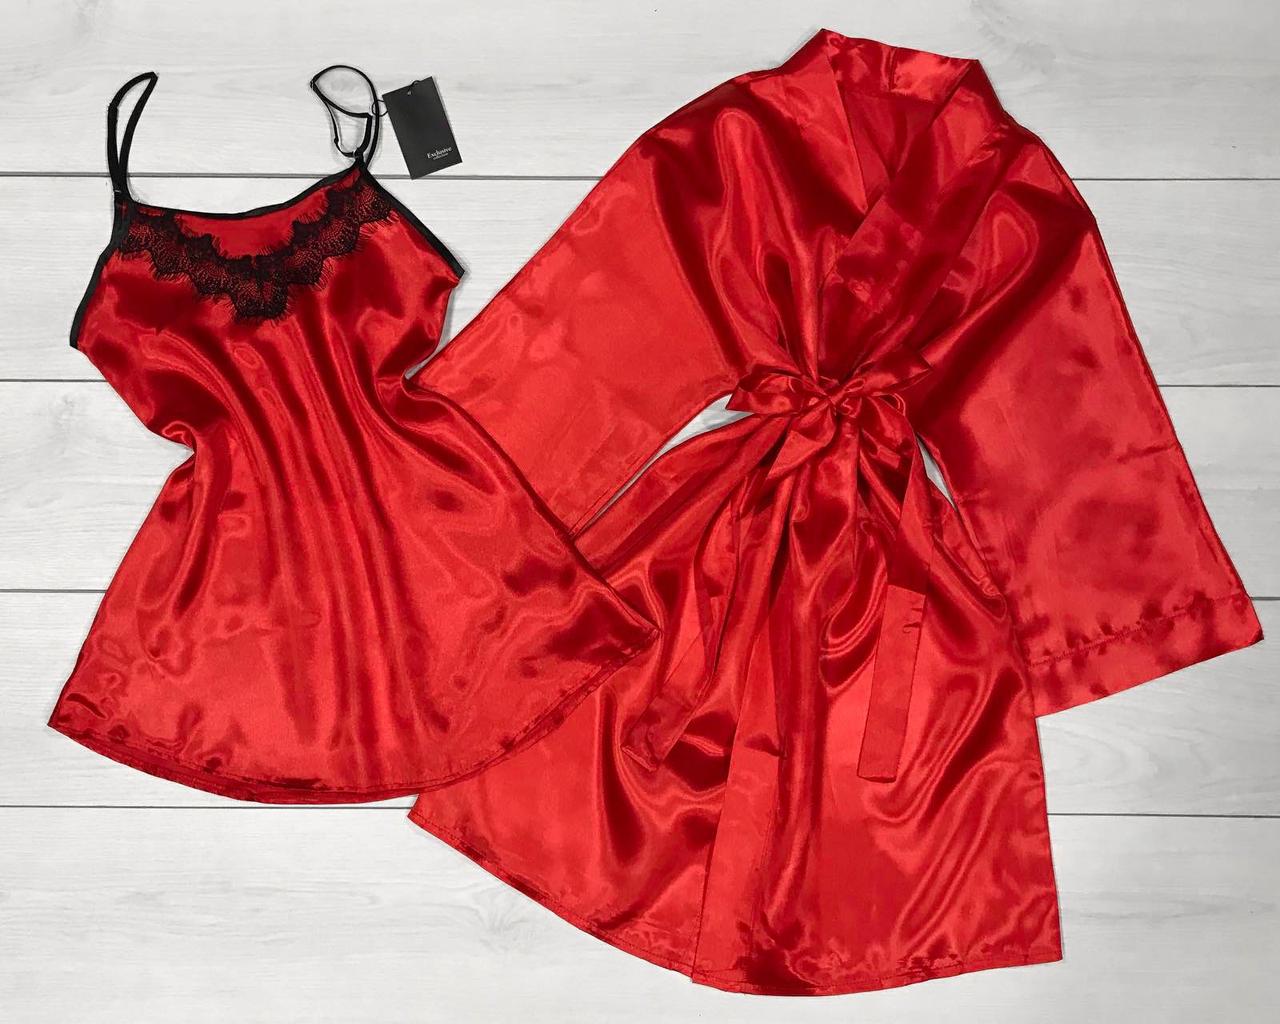 Червоний атласний халат і пеньюар. Жіночий комплект одягу для дому